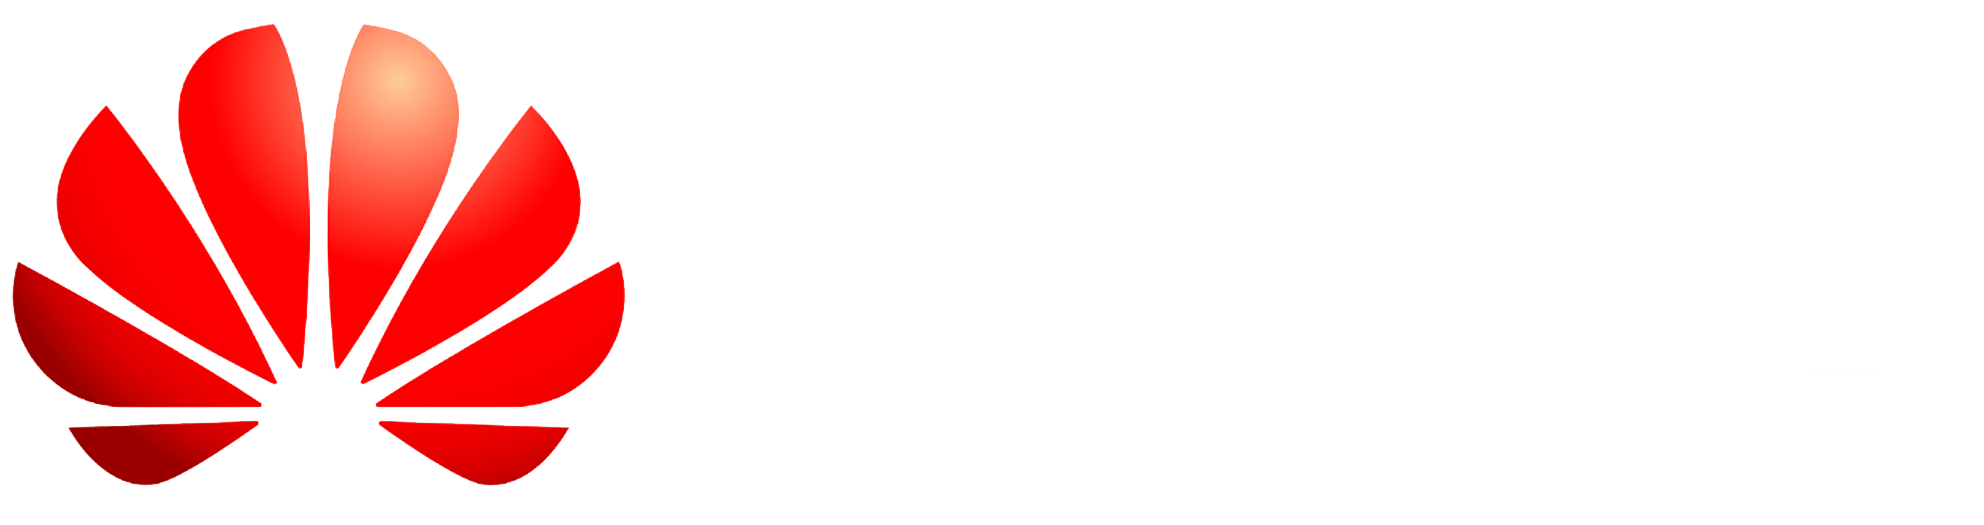 Huawei Logo Png Logo Download Png - vrogue.co